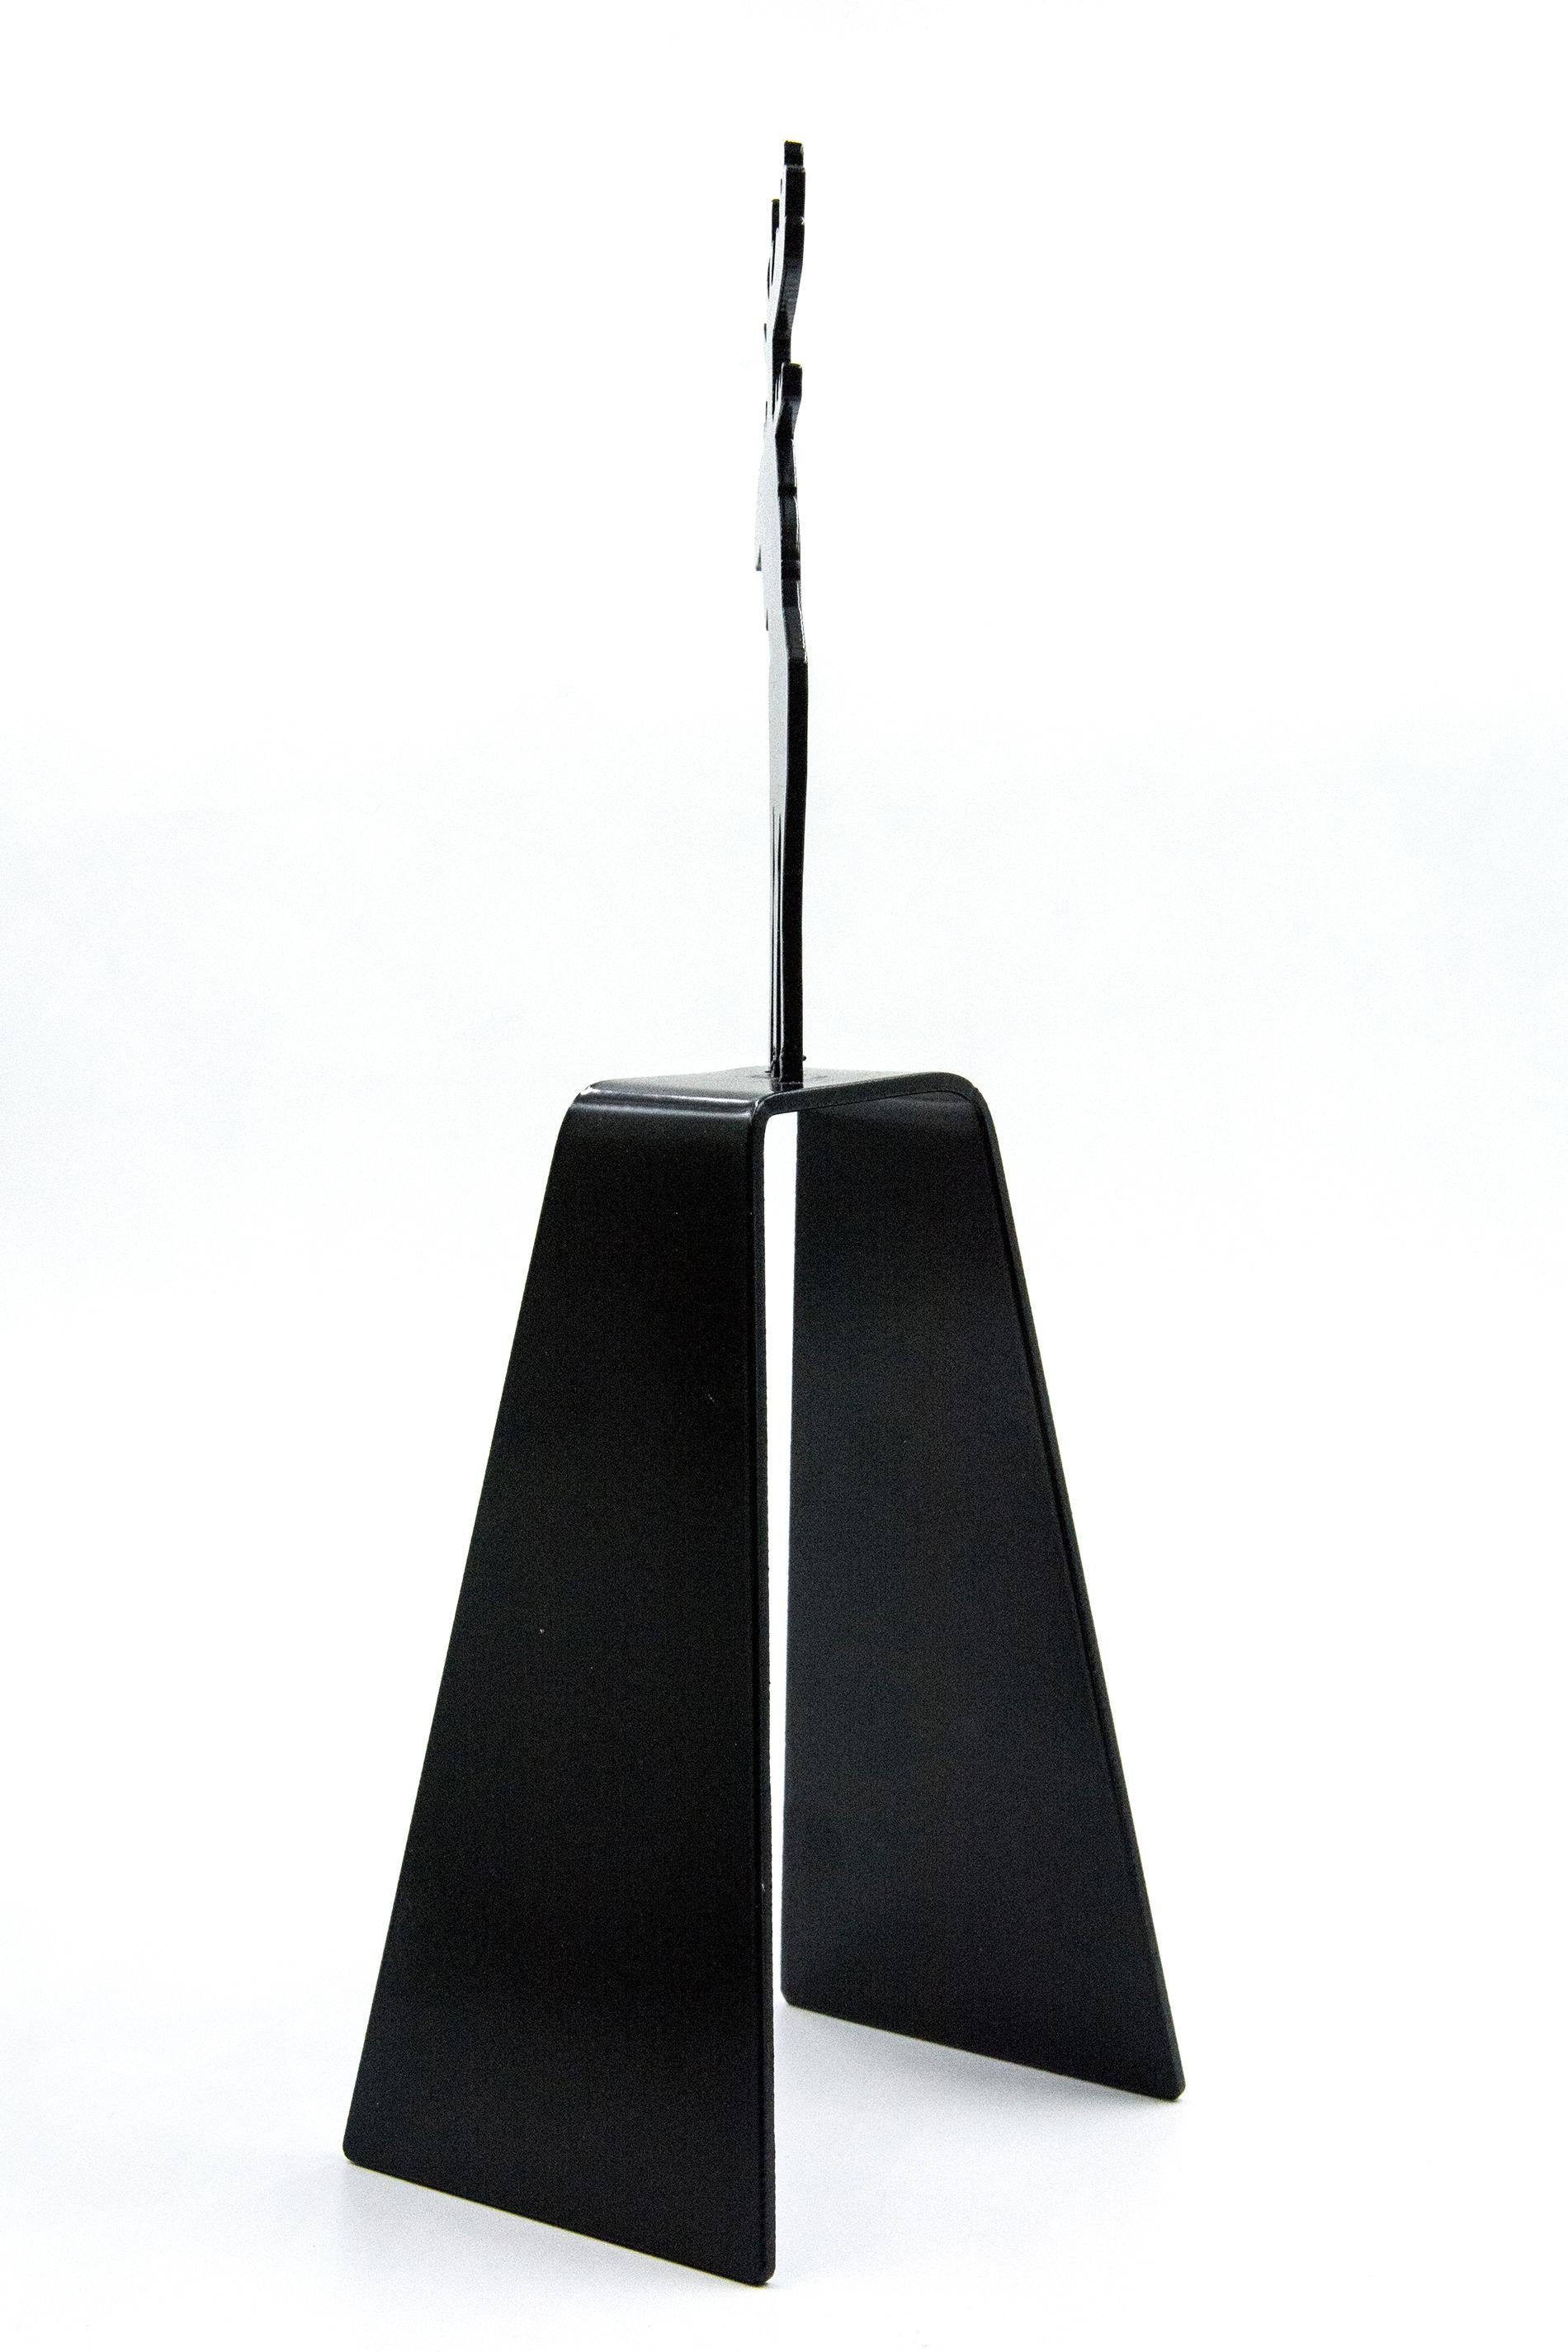 Mooseconstrue 1/4 - kleine, verspielte, kanadische Pop-Art-Skulptur aus Aluminium (Schwarz), Figurative Sculpture, von Charles Pachter